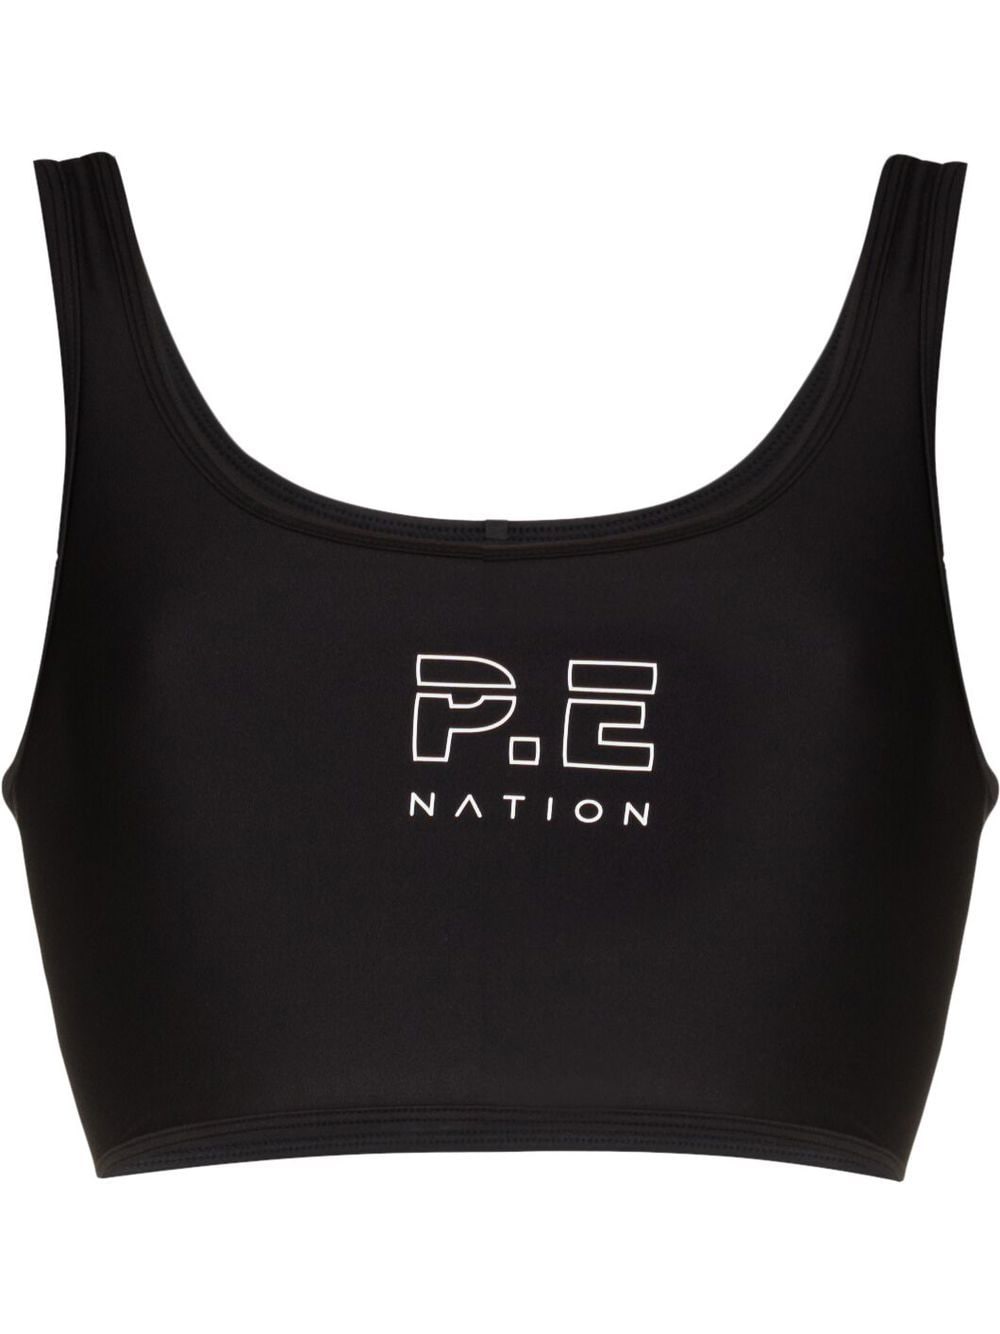 P.E Nation Dynamic sports bra - Black